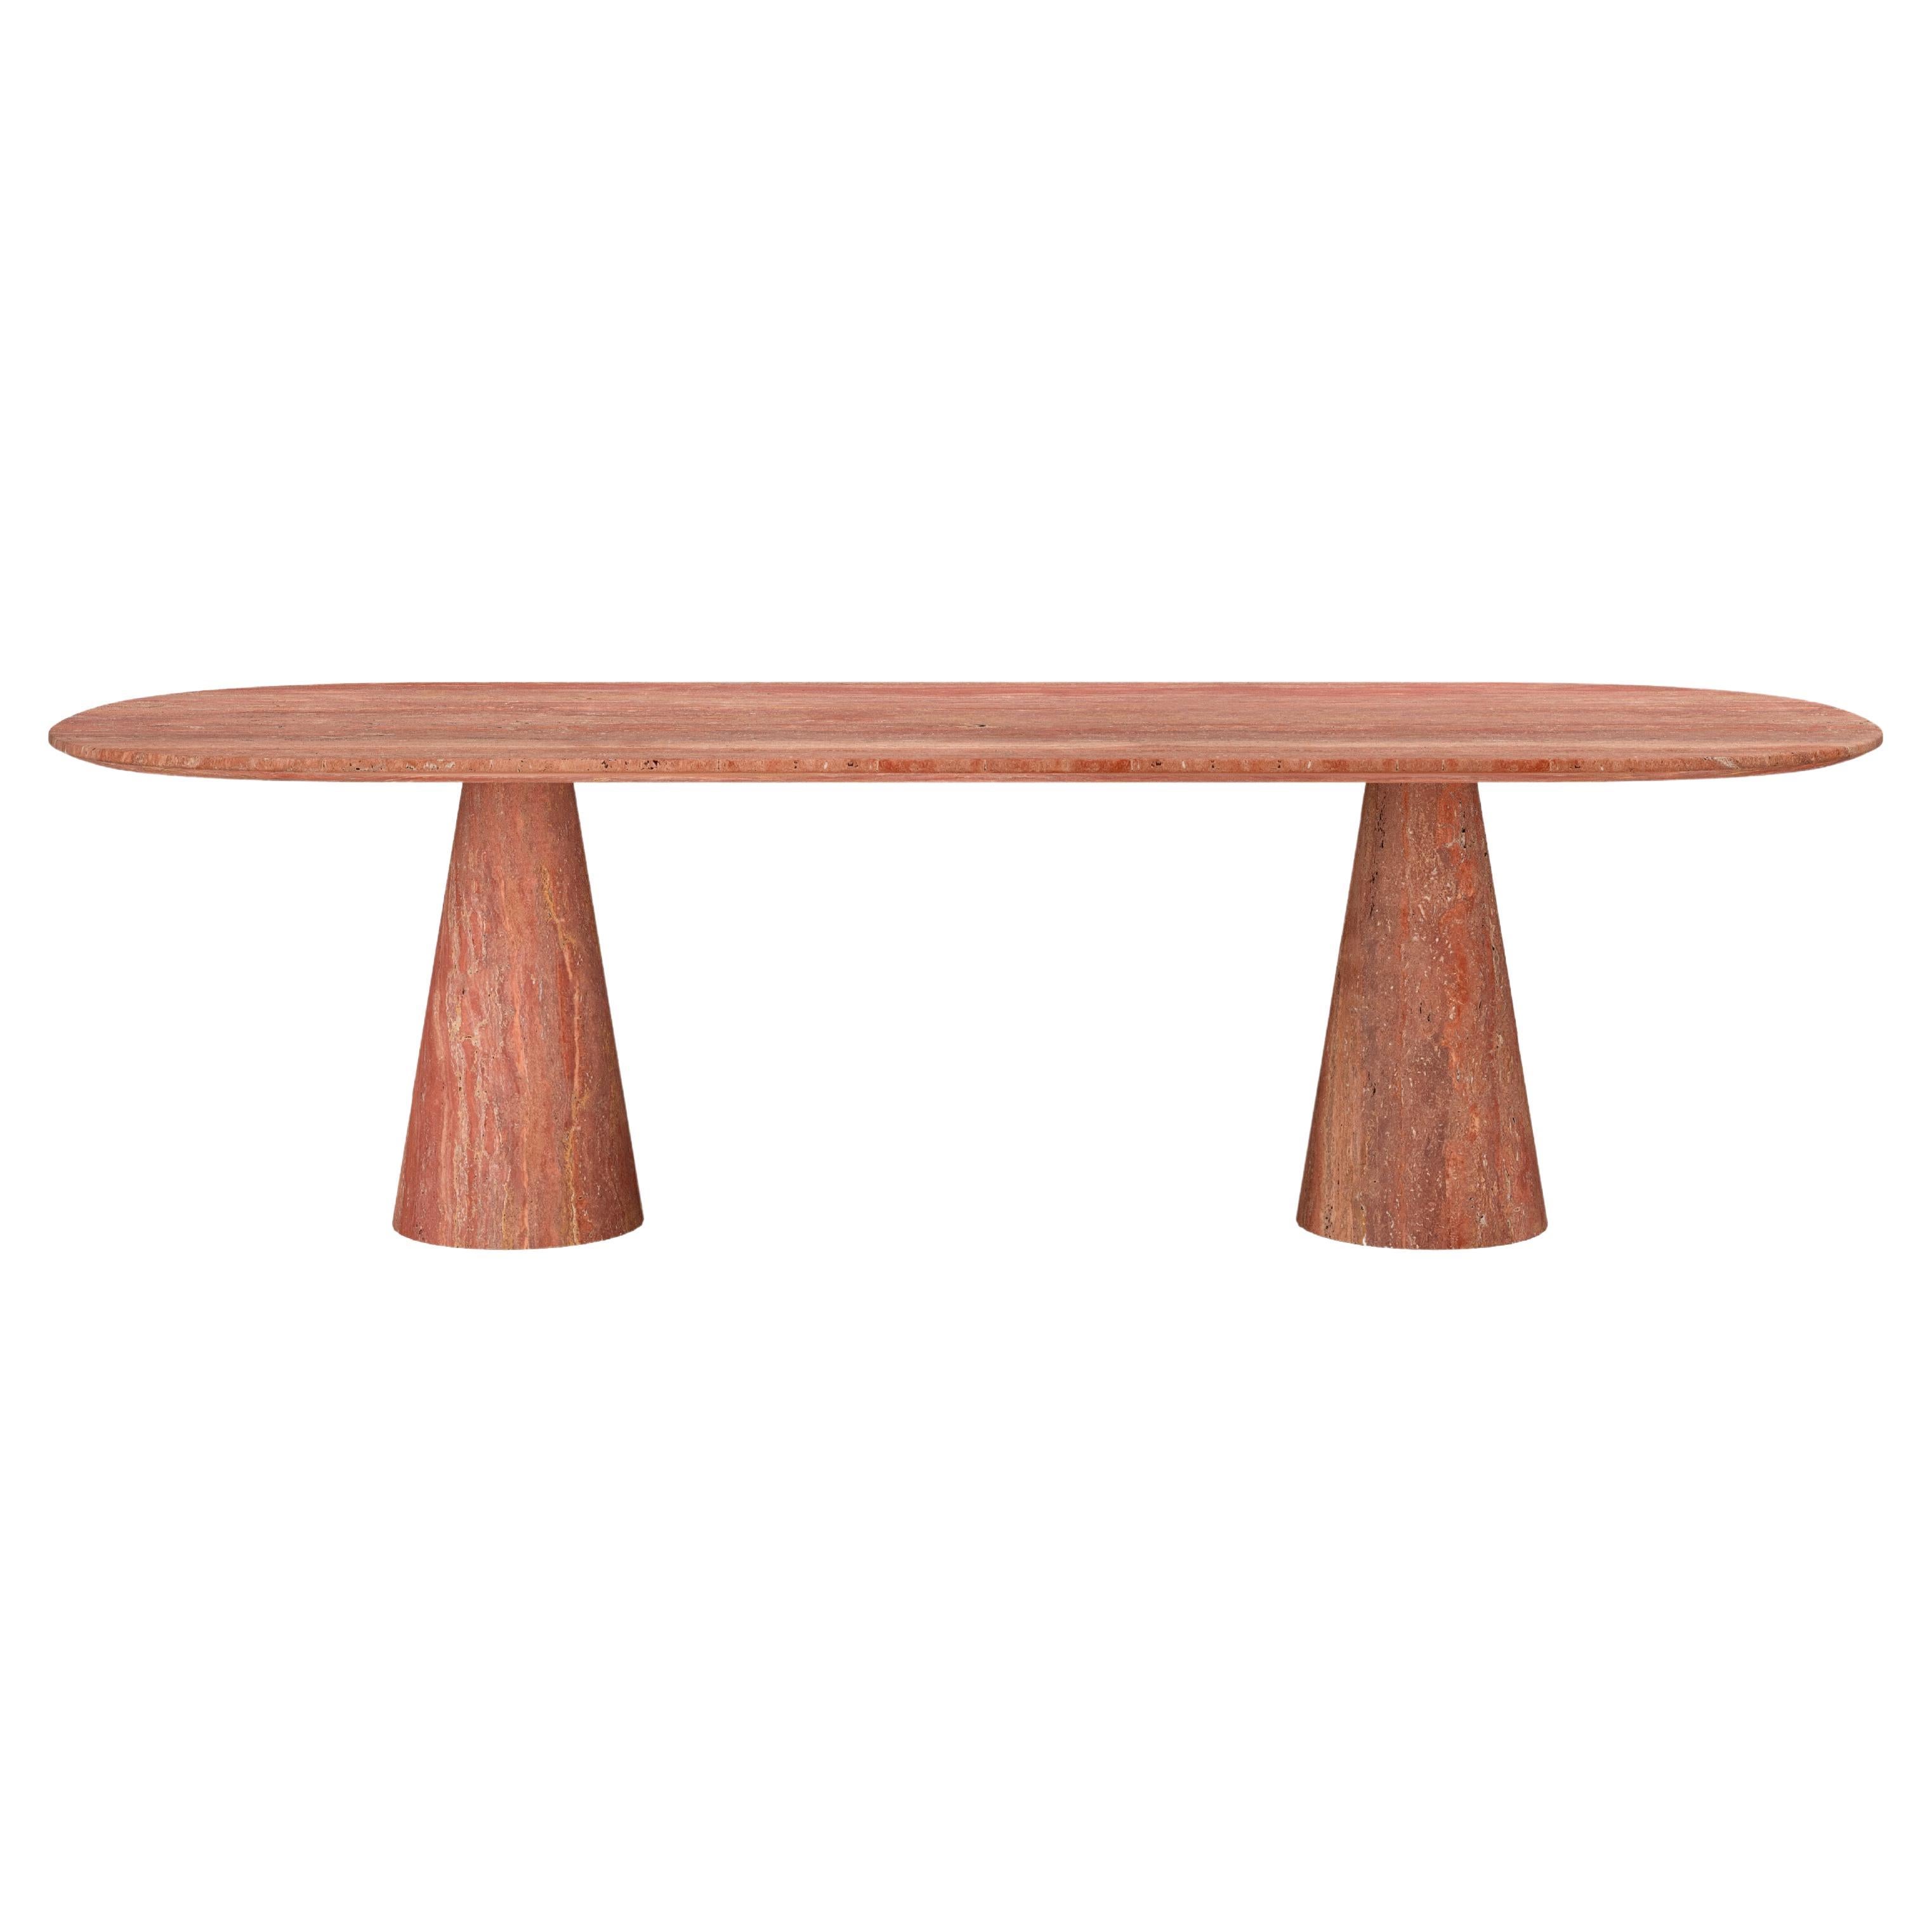 FORM(LA) Cono Oval Dining Table 108”L x 48”W x 30”H Travertino Rosso VC For Sale